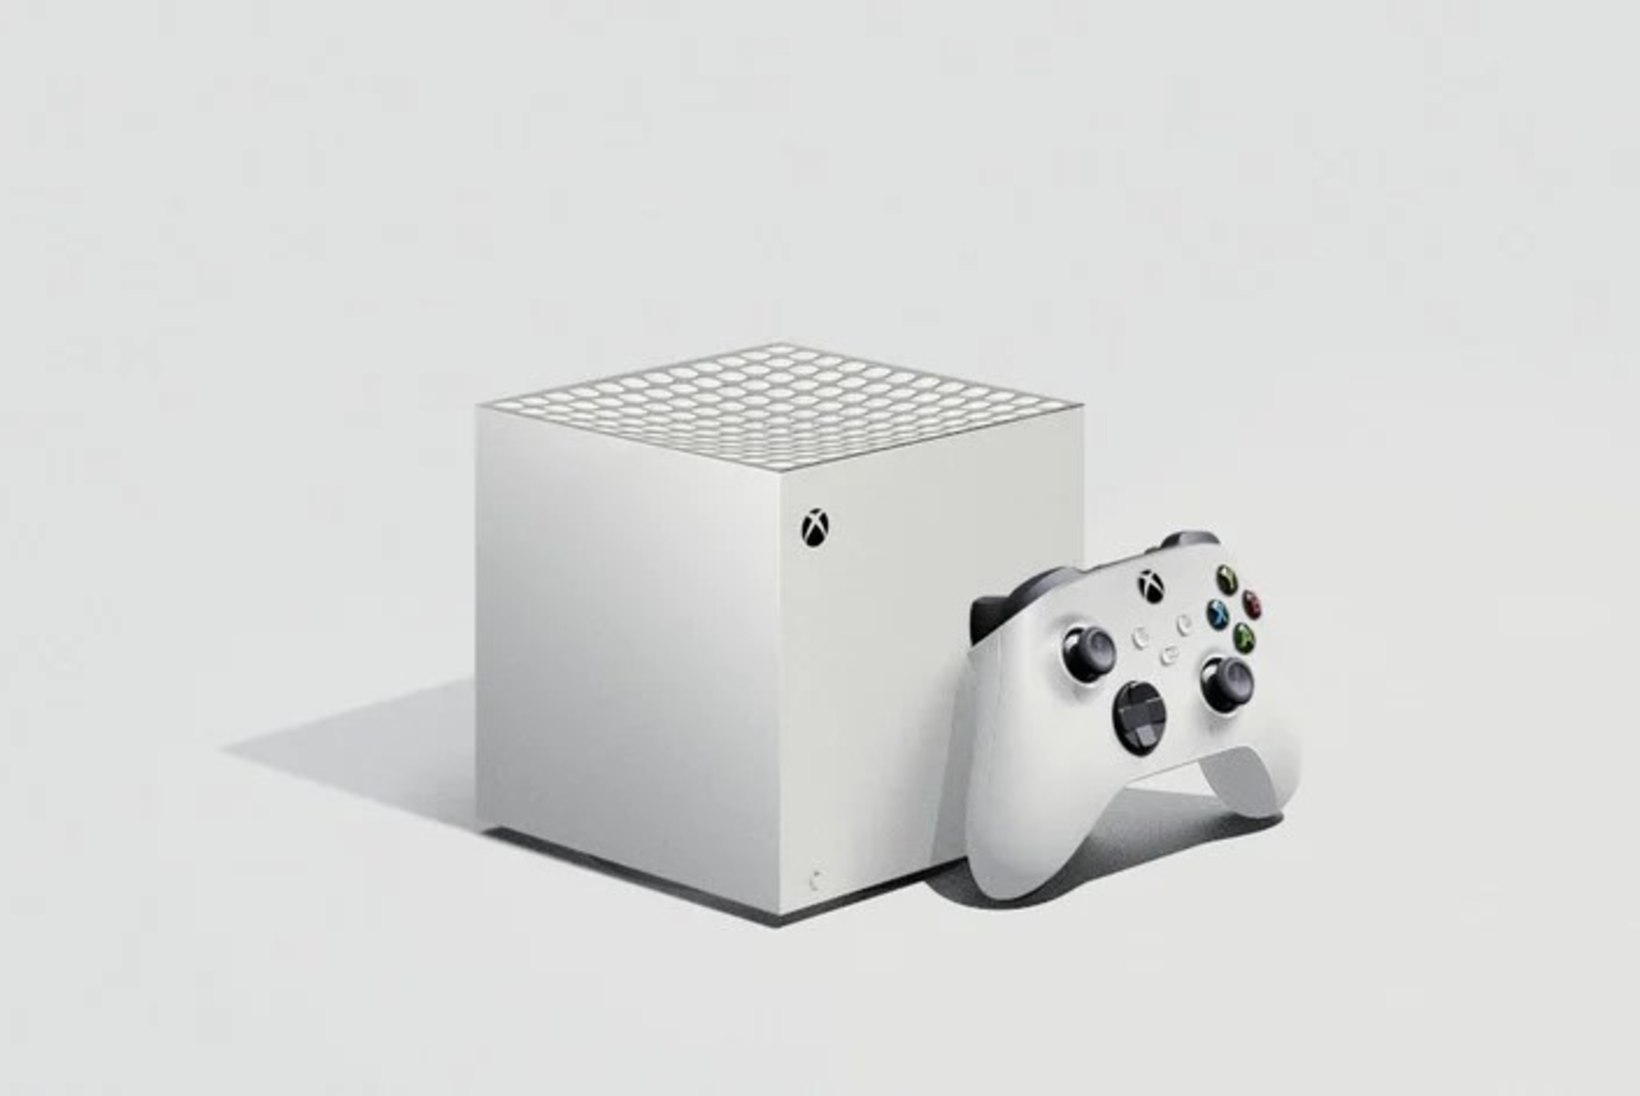 Microsofti suutmatus uut Xboxi mudelit välja kuulutada muutub iga päevaga aina veidramaks